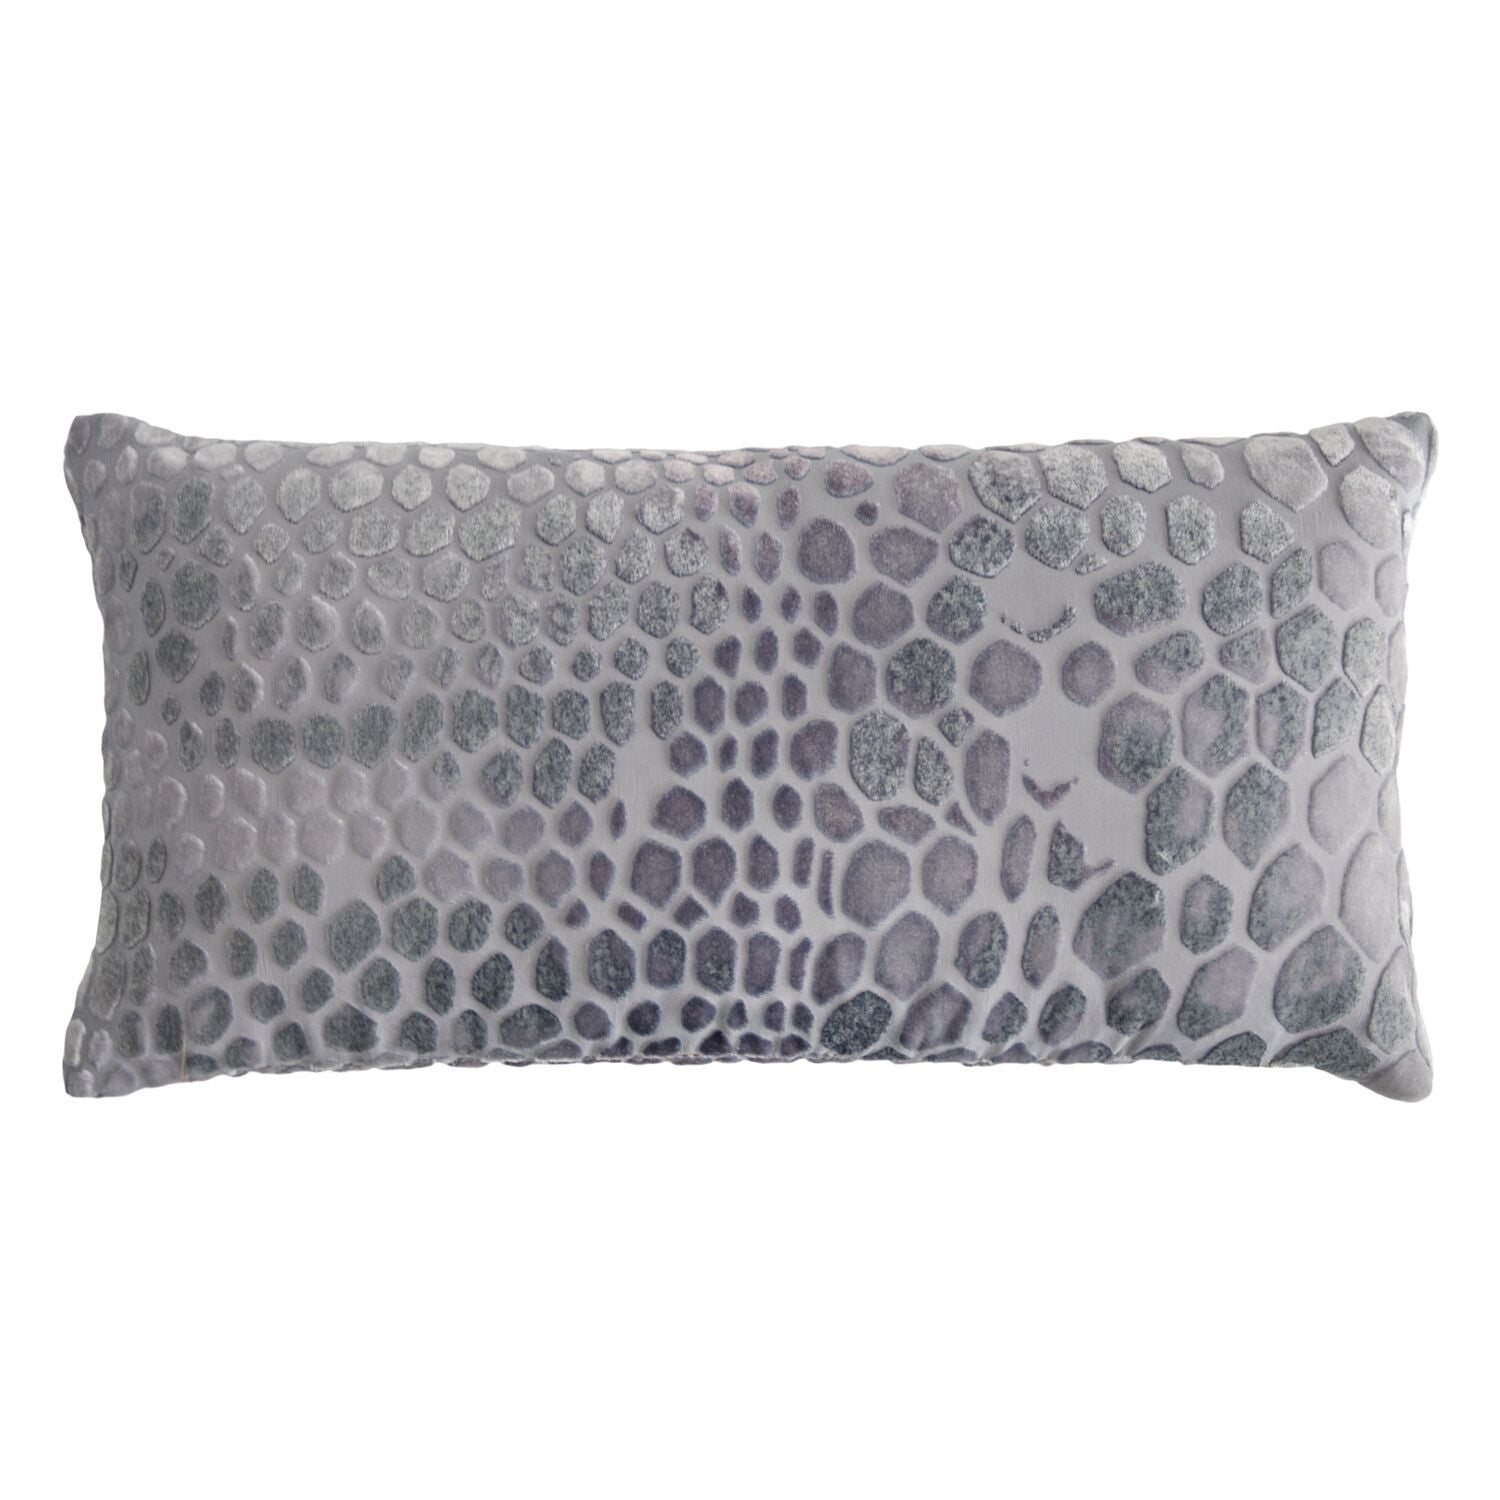 Silver Gray Snakeskin Velvet Pillows by Kevin O'Brien Studio